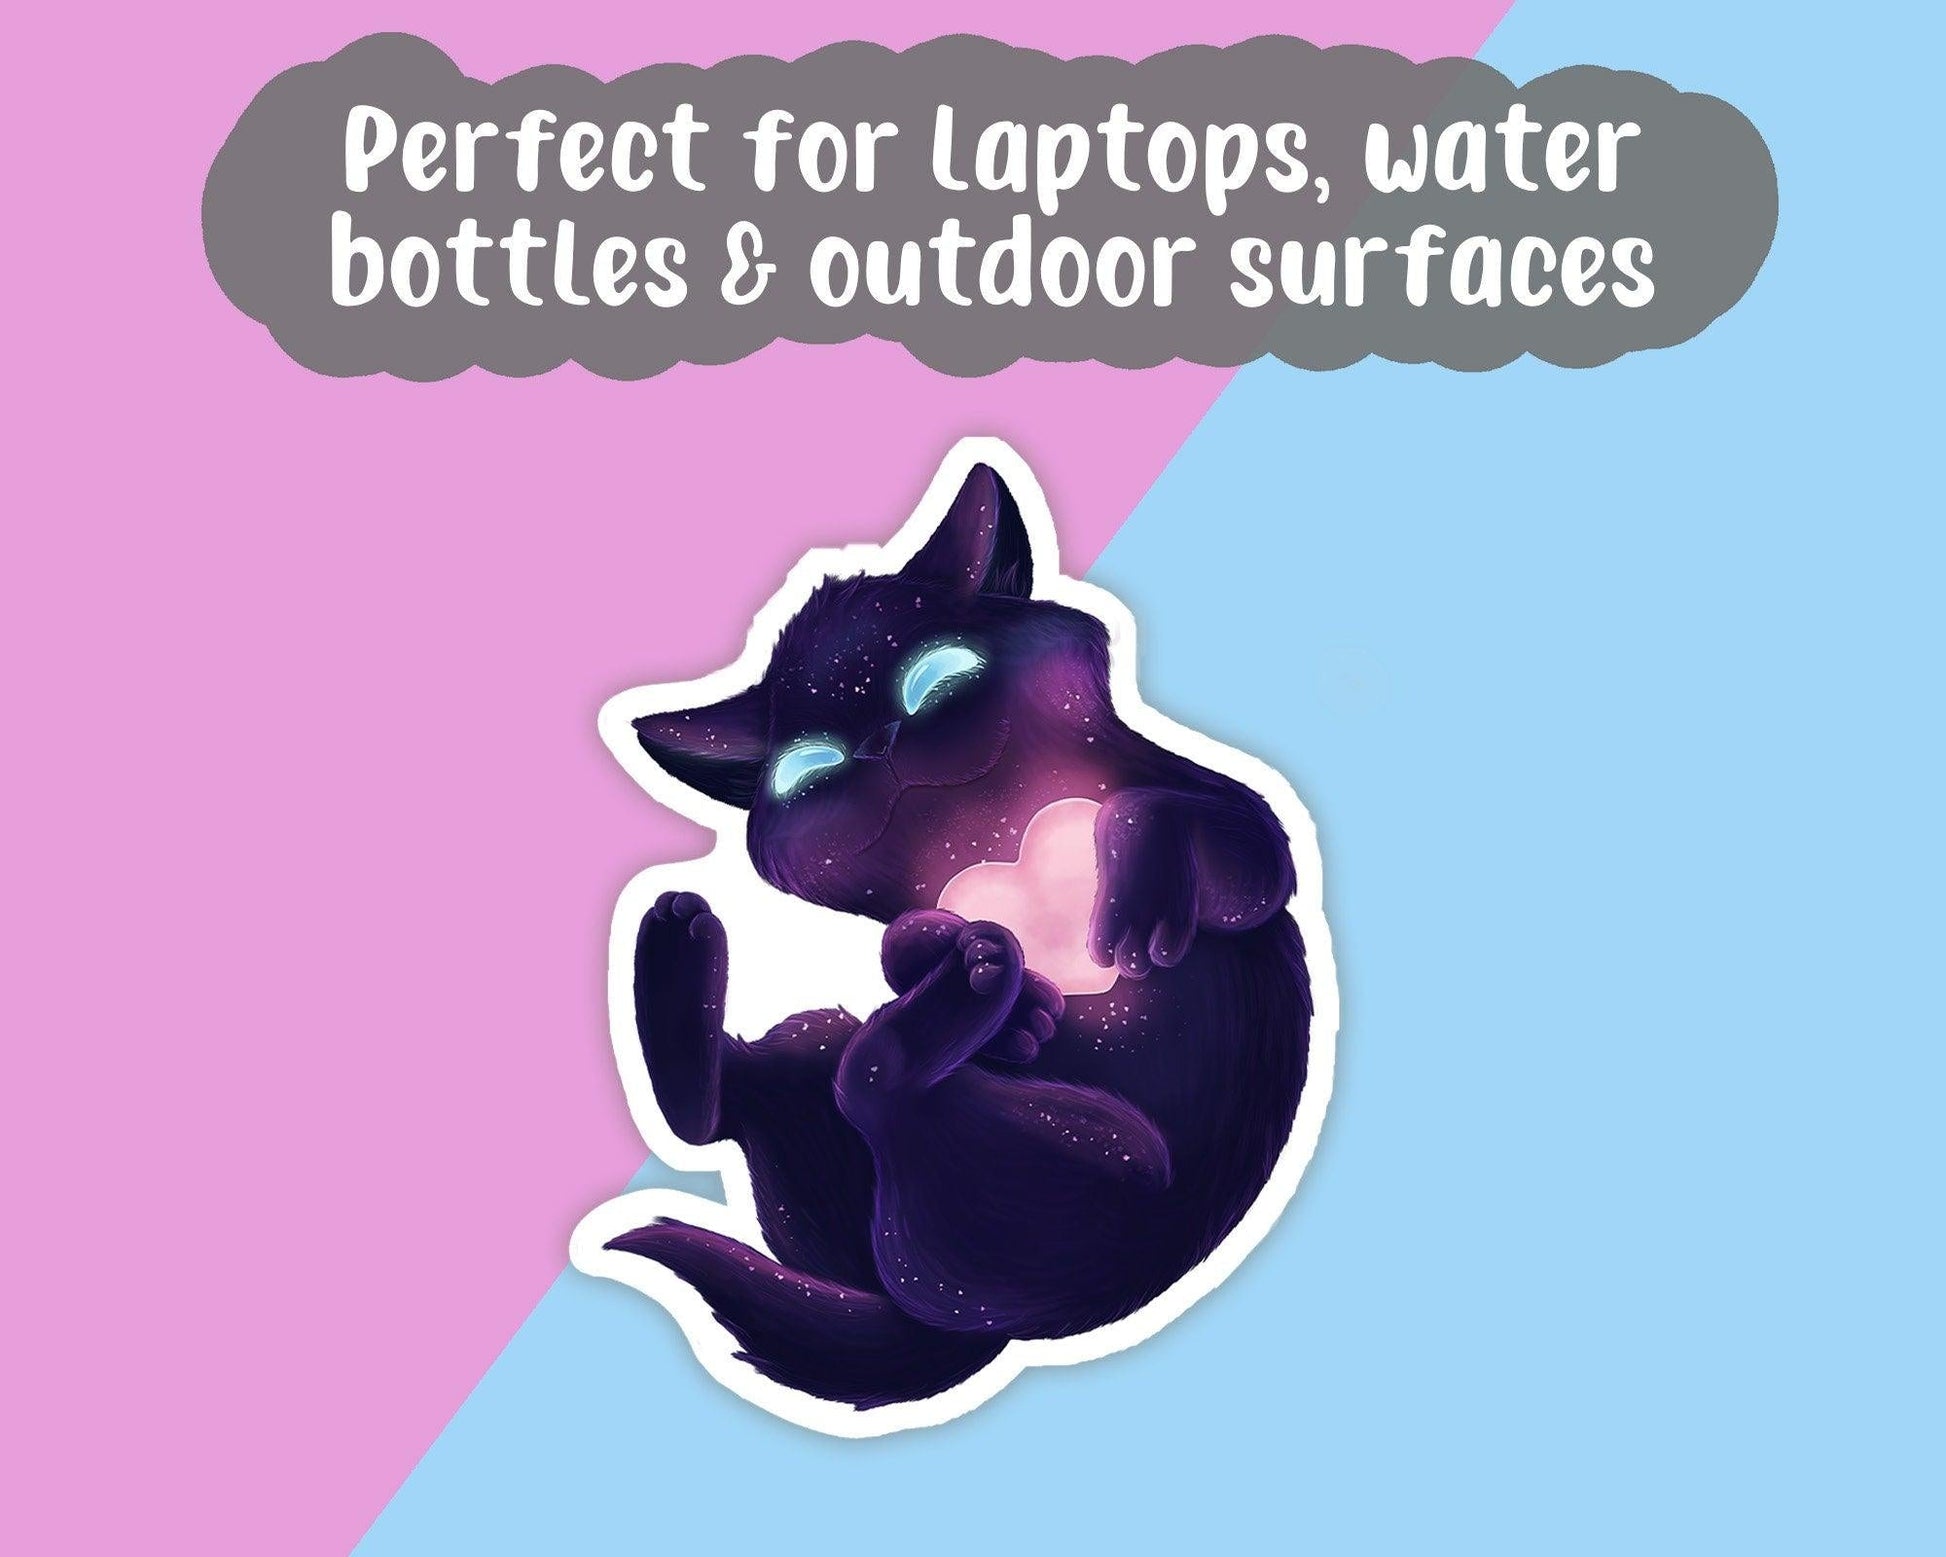 Black Cat, Waterproof Vinyl Sticker, - Jointhecreativeside